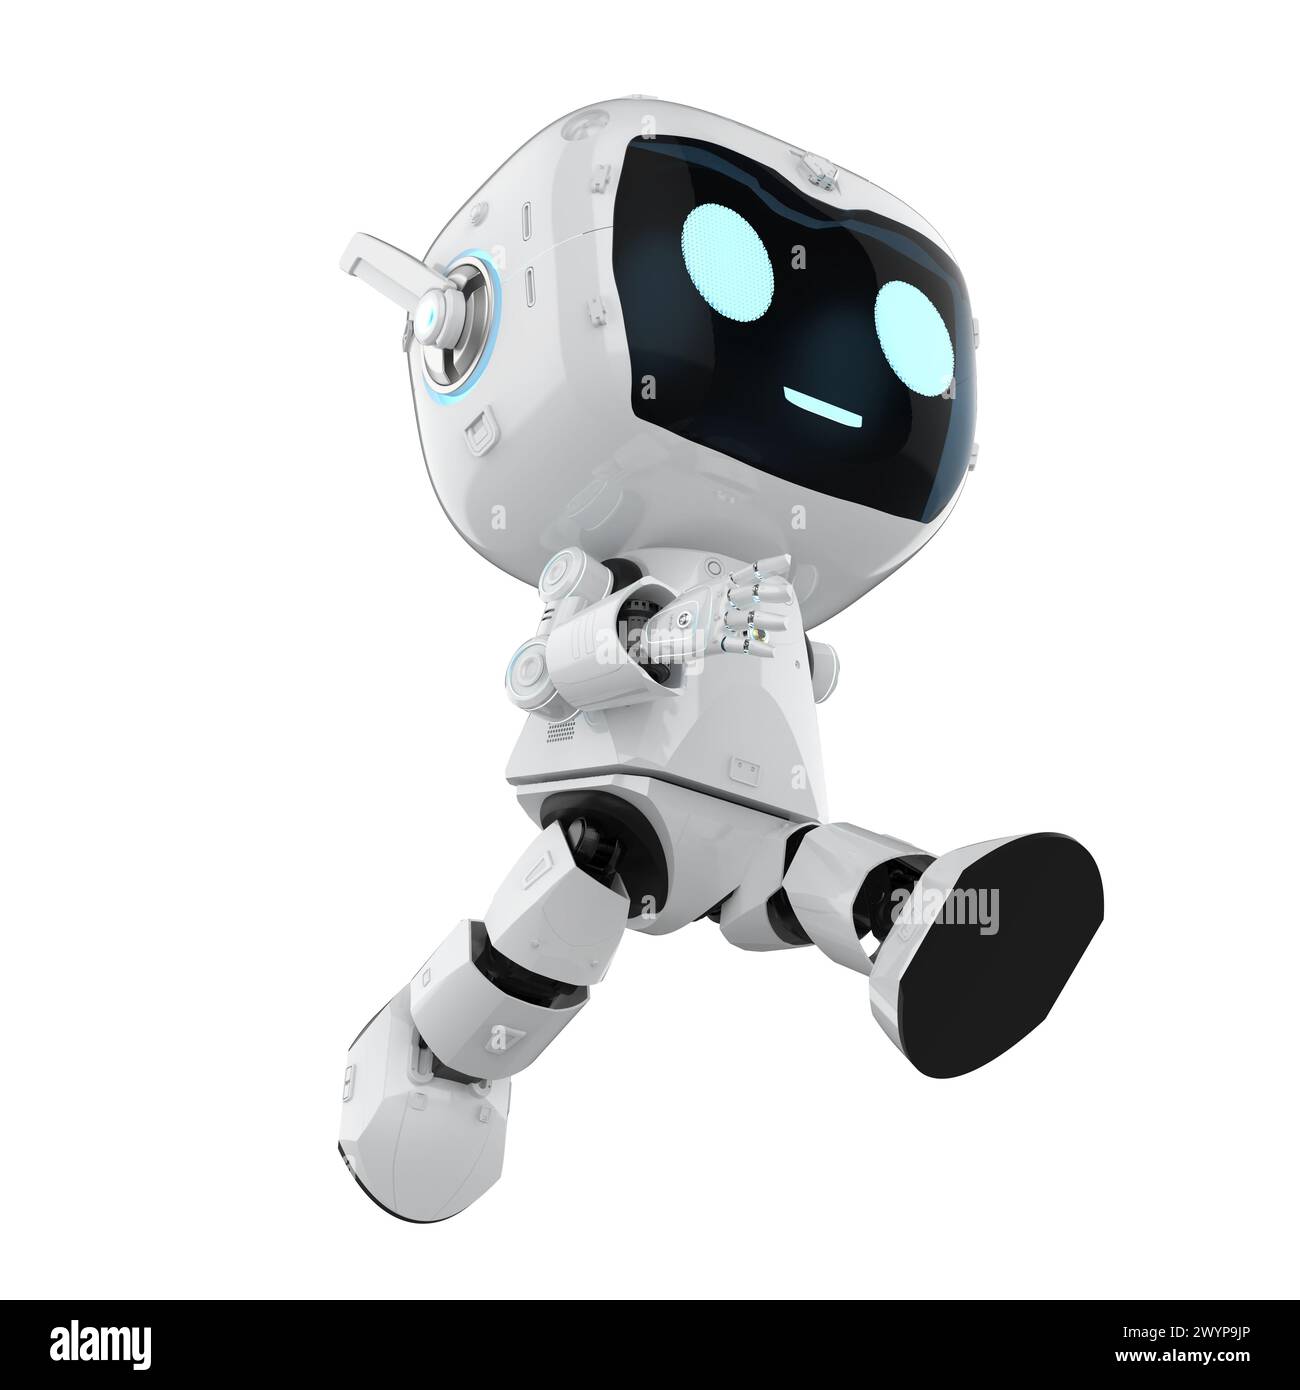 rendu 3d mignon et petit robot assistant personnel d'intelligence artificielle avec personnage de dessin animé marcher isolé sur blanc Banque D'Images